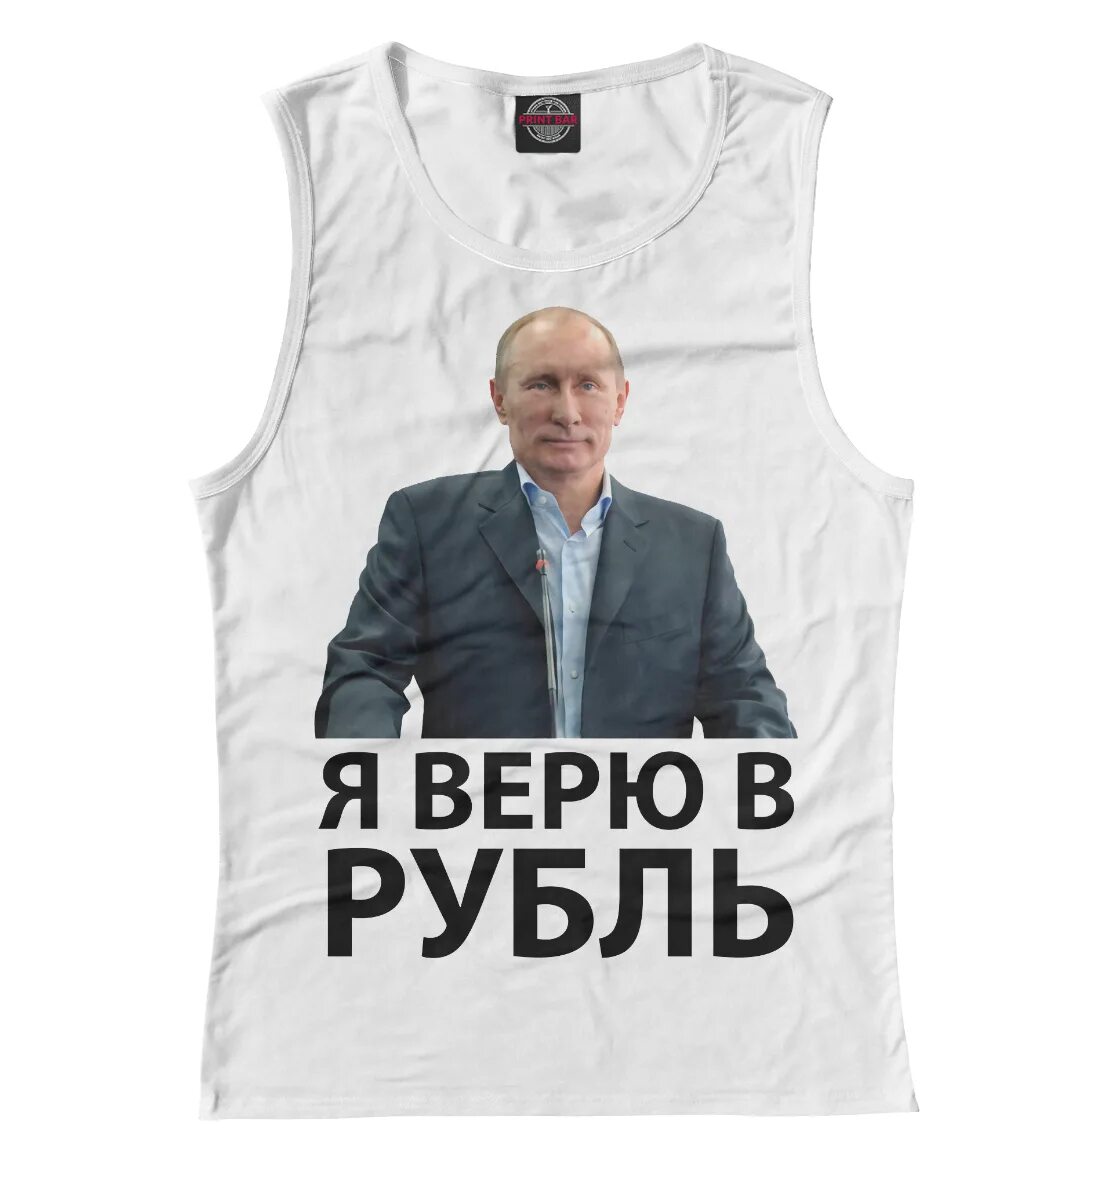 Рублей футболки. Футболка рубль. Футболка с Путиным верю в рубль. Я верю в рубль. Во что я верю.